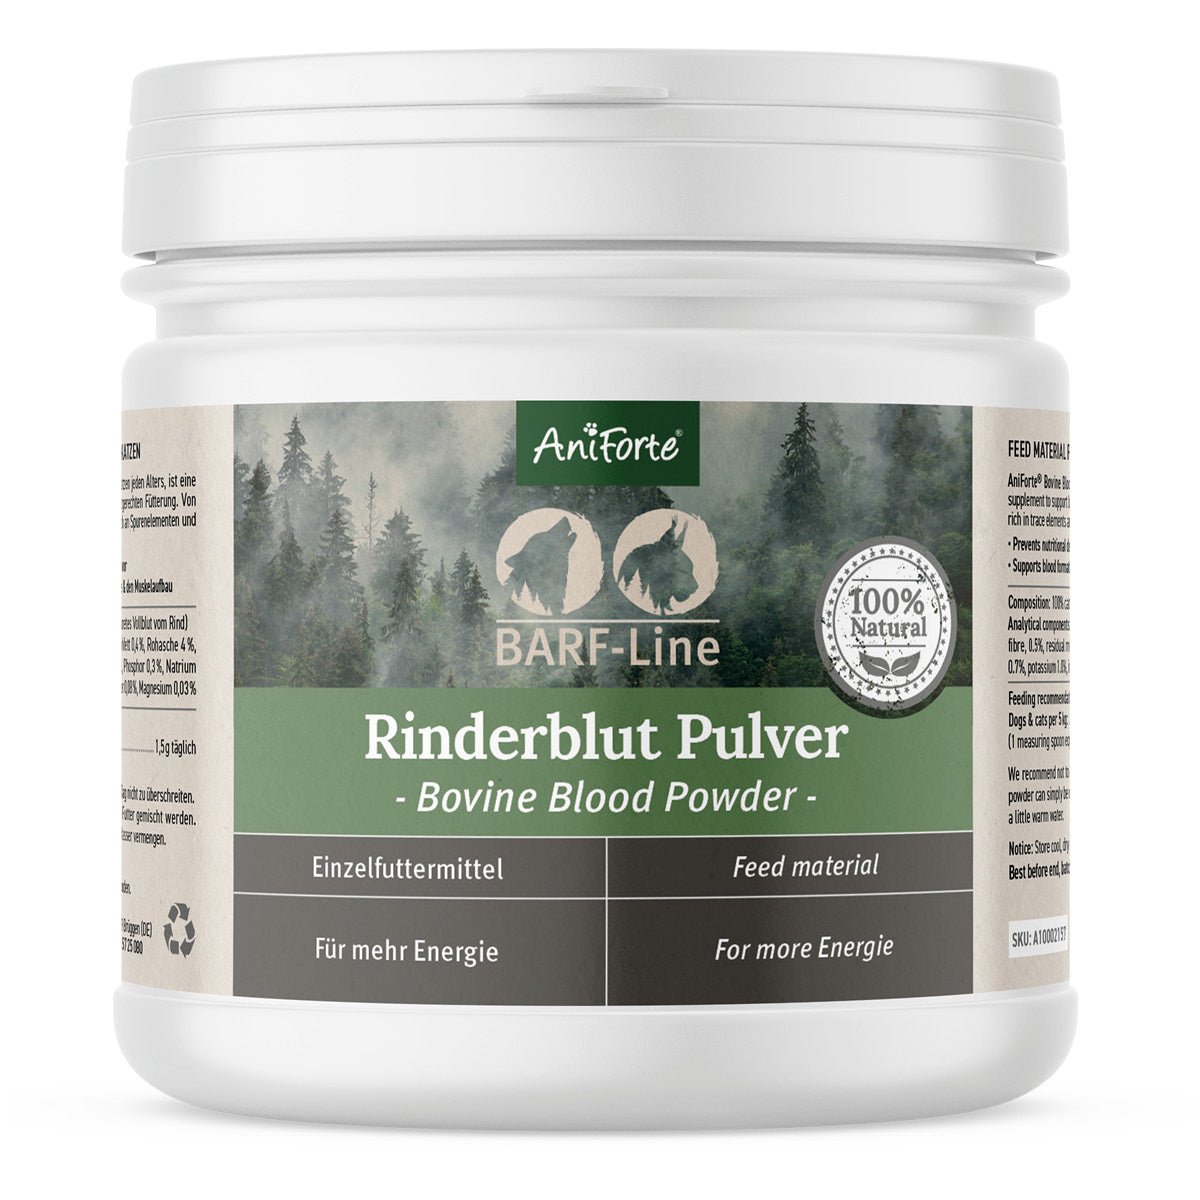 BARF-Line Rinderblut Pulver - AniForte